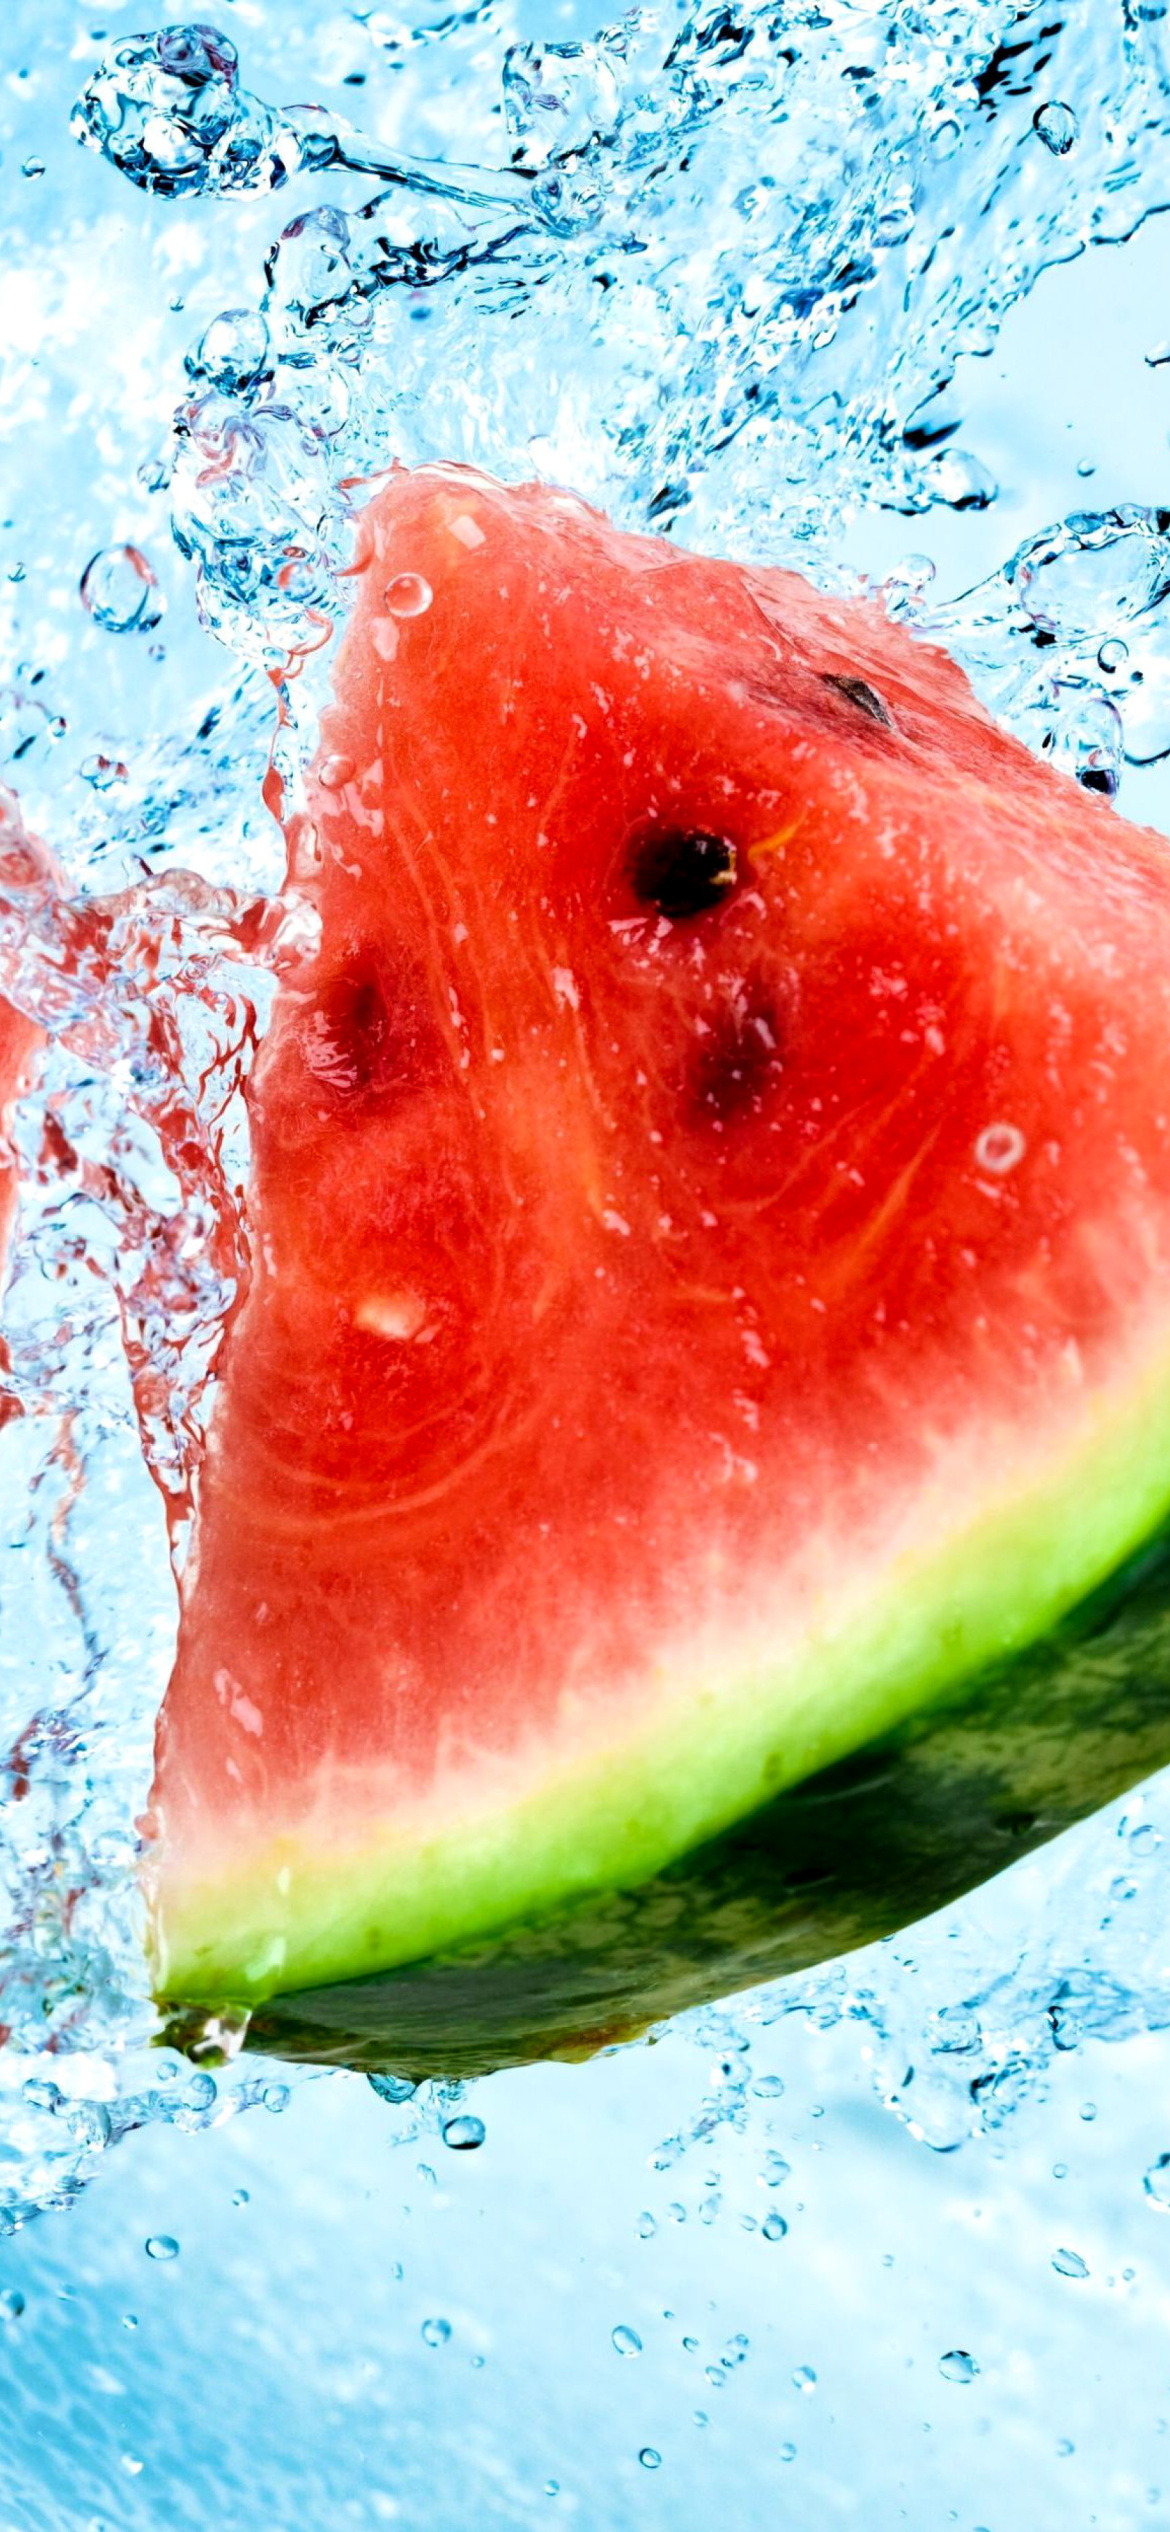 Das Watermelon Triangle Slices Wallpaper 1170x2532